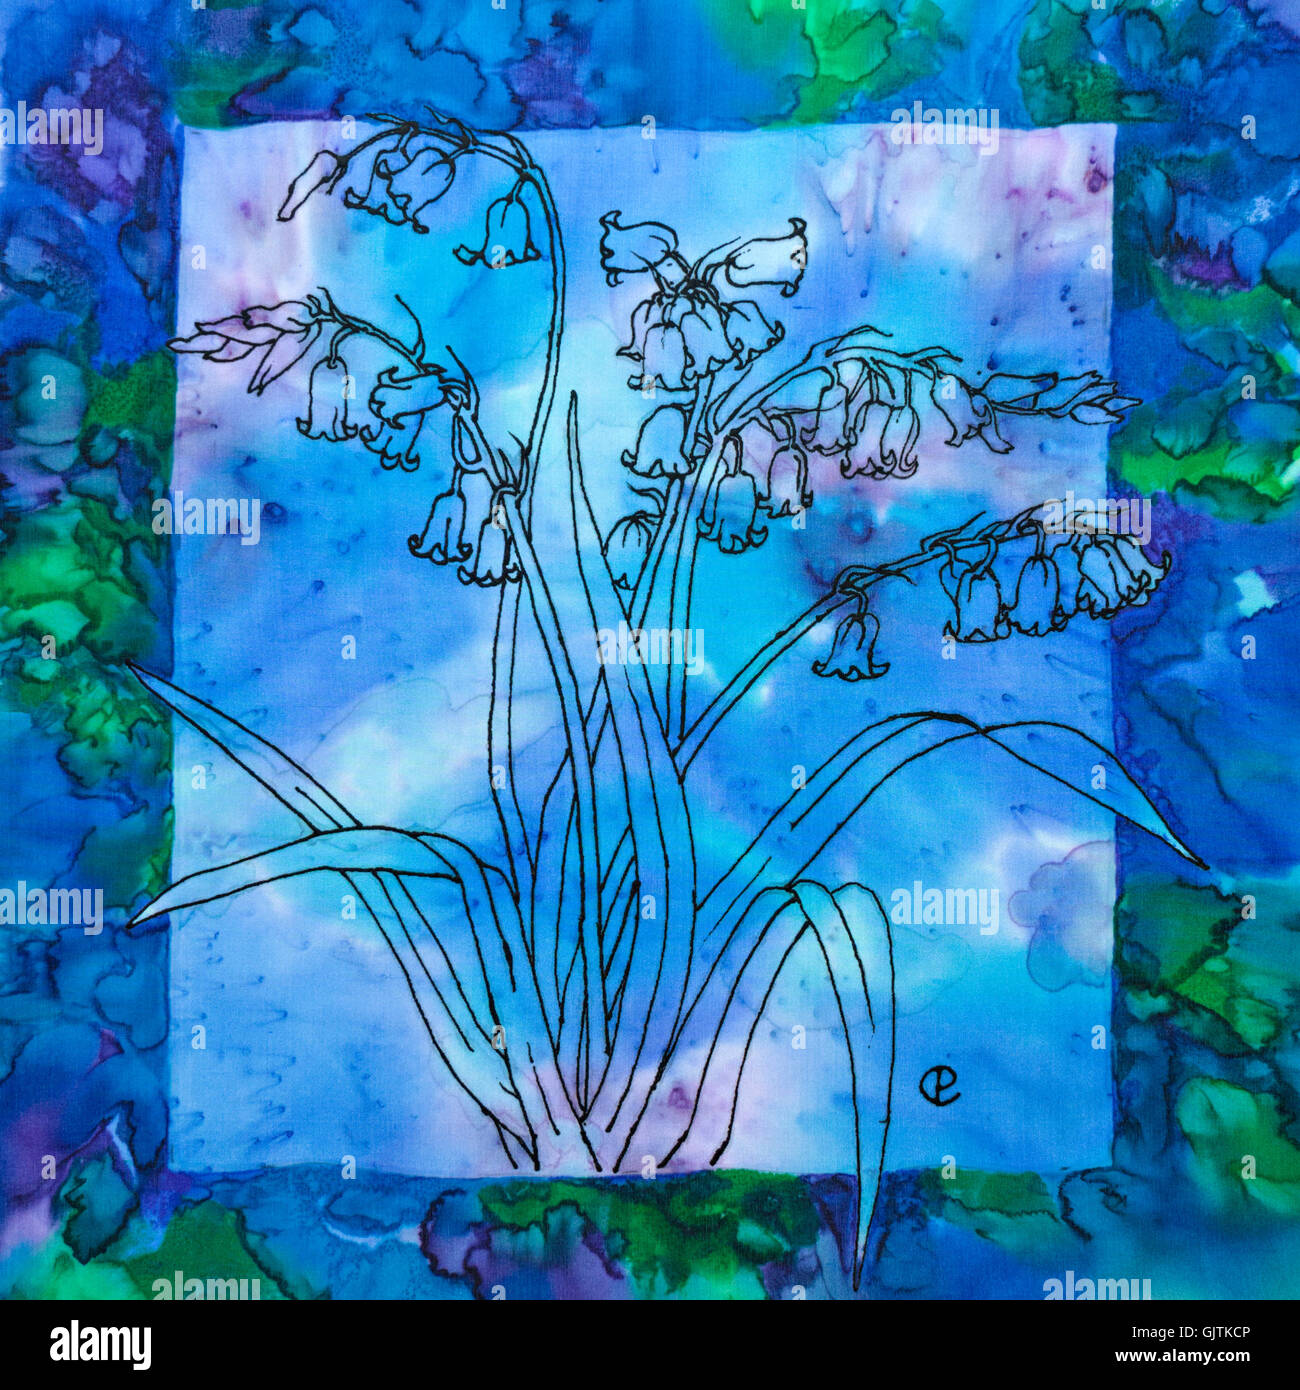 Fotografieren von Seidenmalerei Bluebell Blumen Hintergrund blau und grün mit Dampf Farbstoffe durch Paula Chapman fixiert. Stockfoto